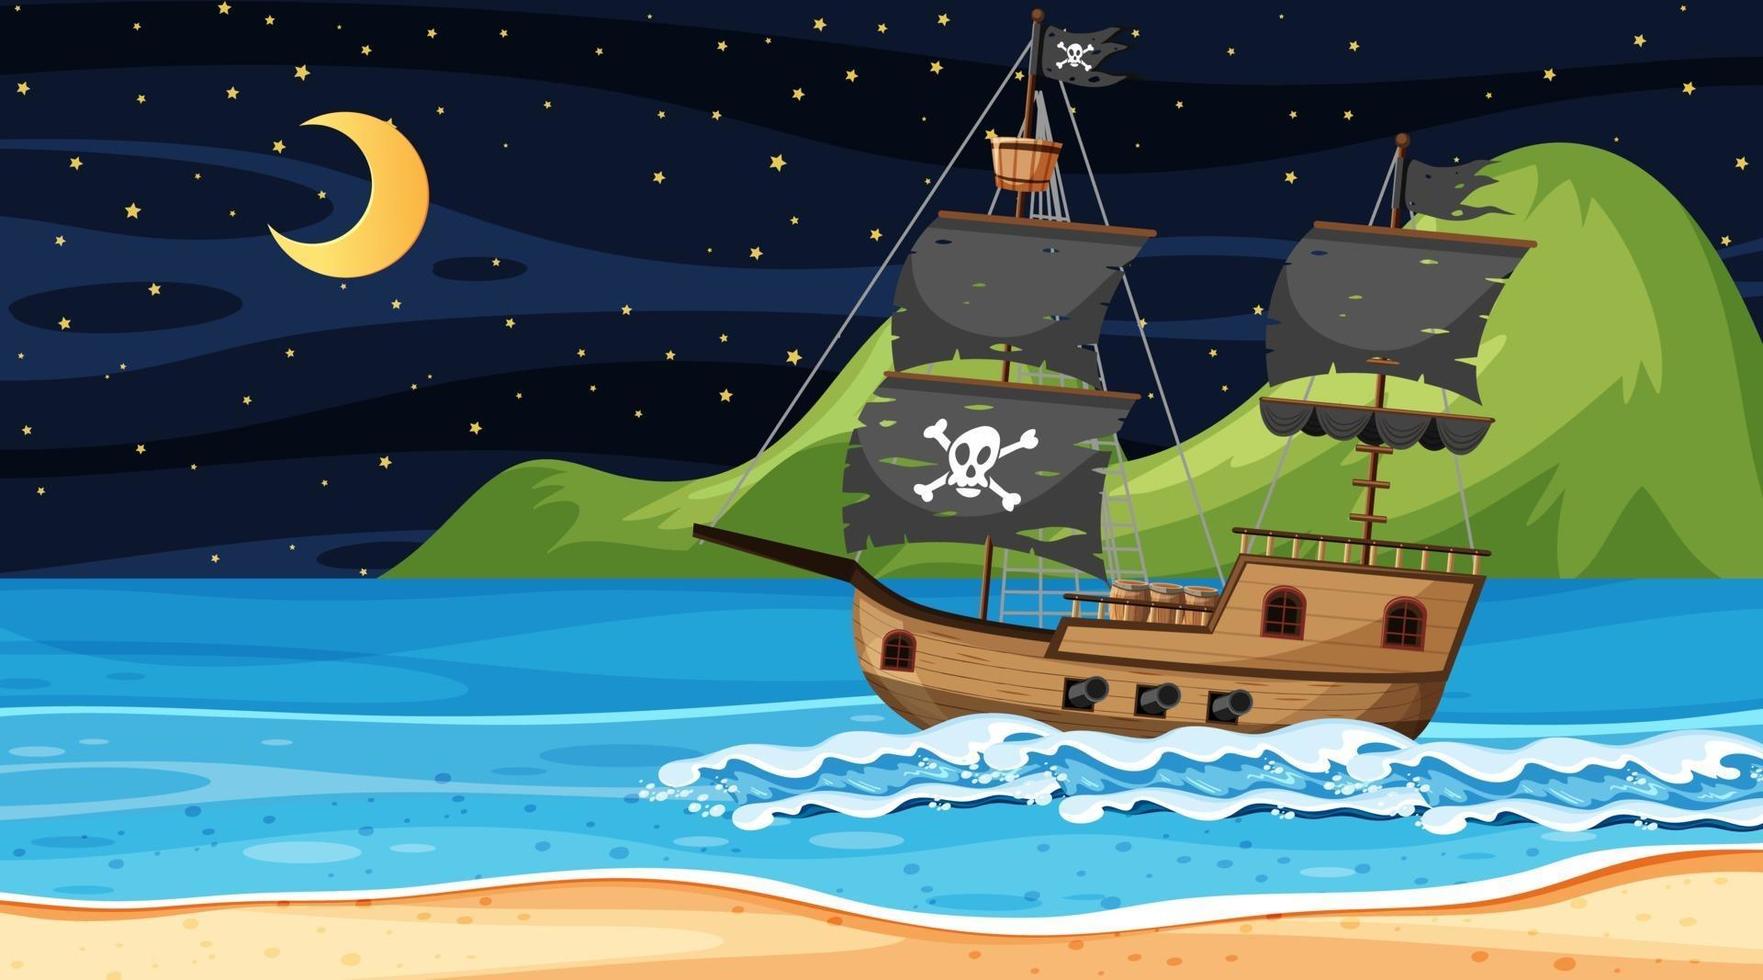 océano con barco pirata en la escena nocturna en estilo de dibujos animados vector